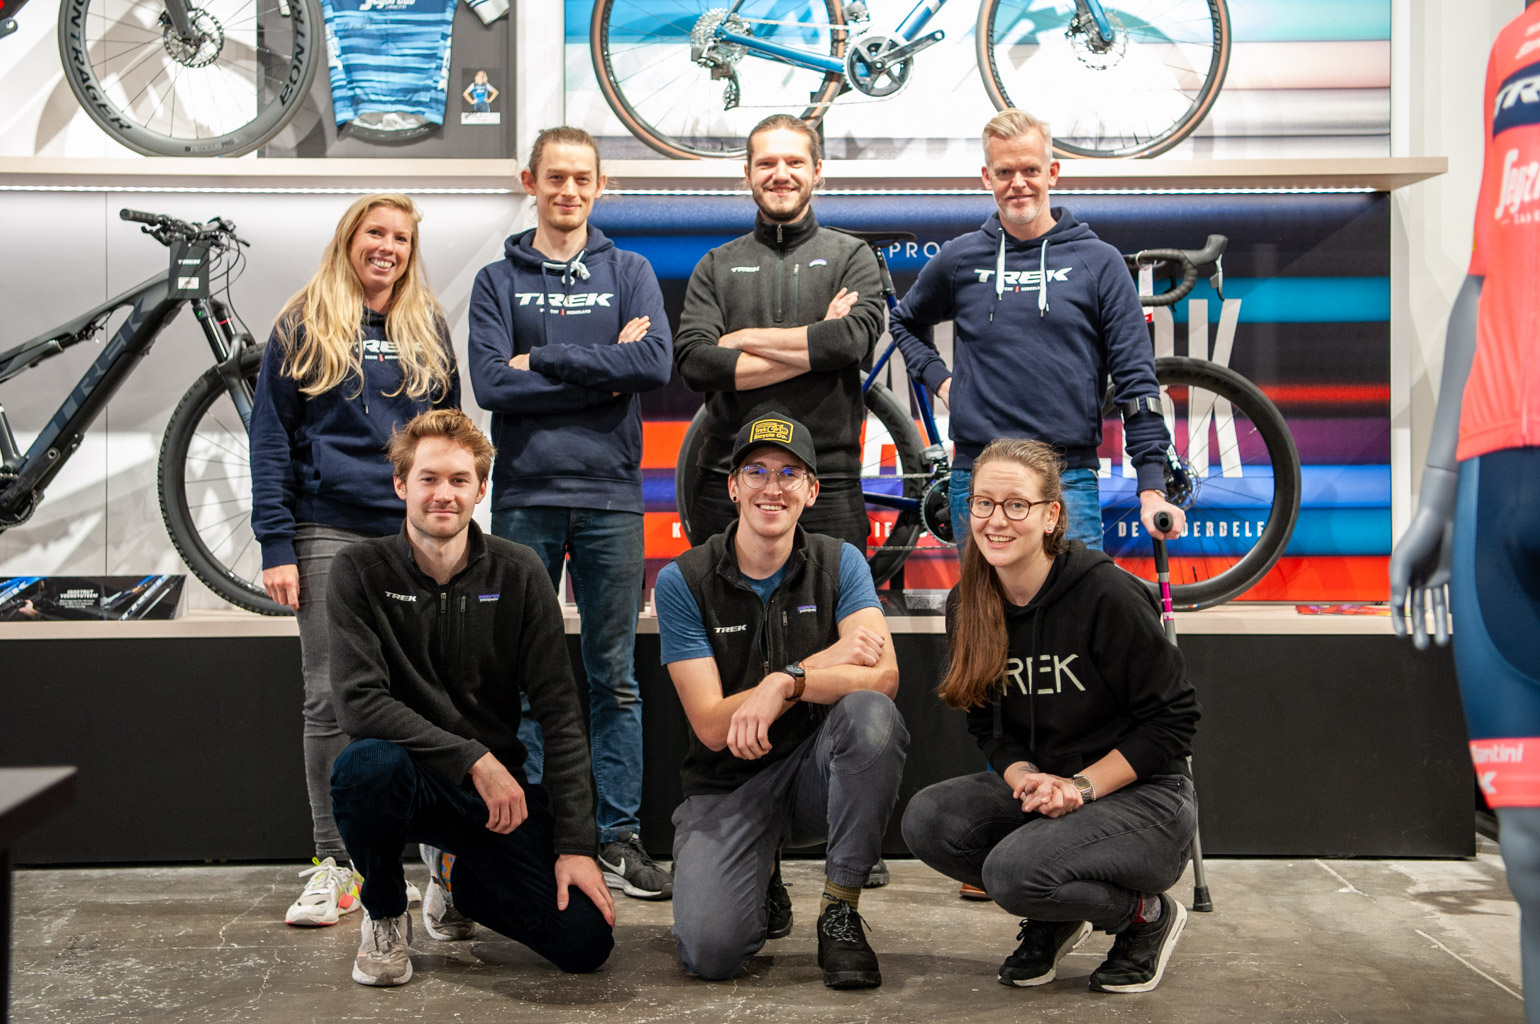 Civic boksen lading Op bezoek bij Trek Bicycle Store Utrecht - Racefietsblog.nl